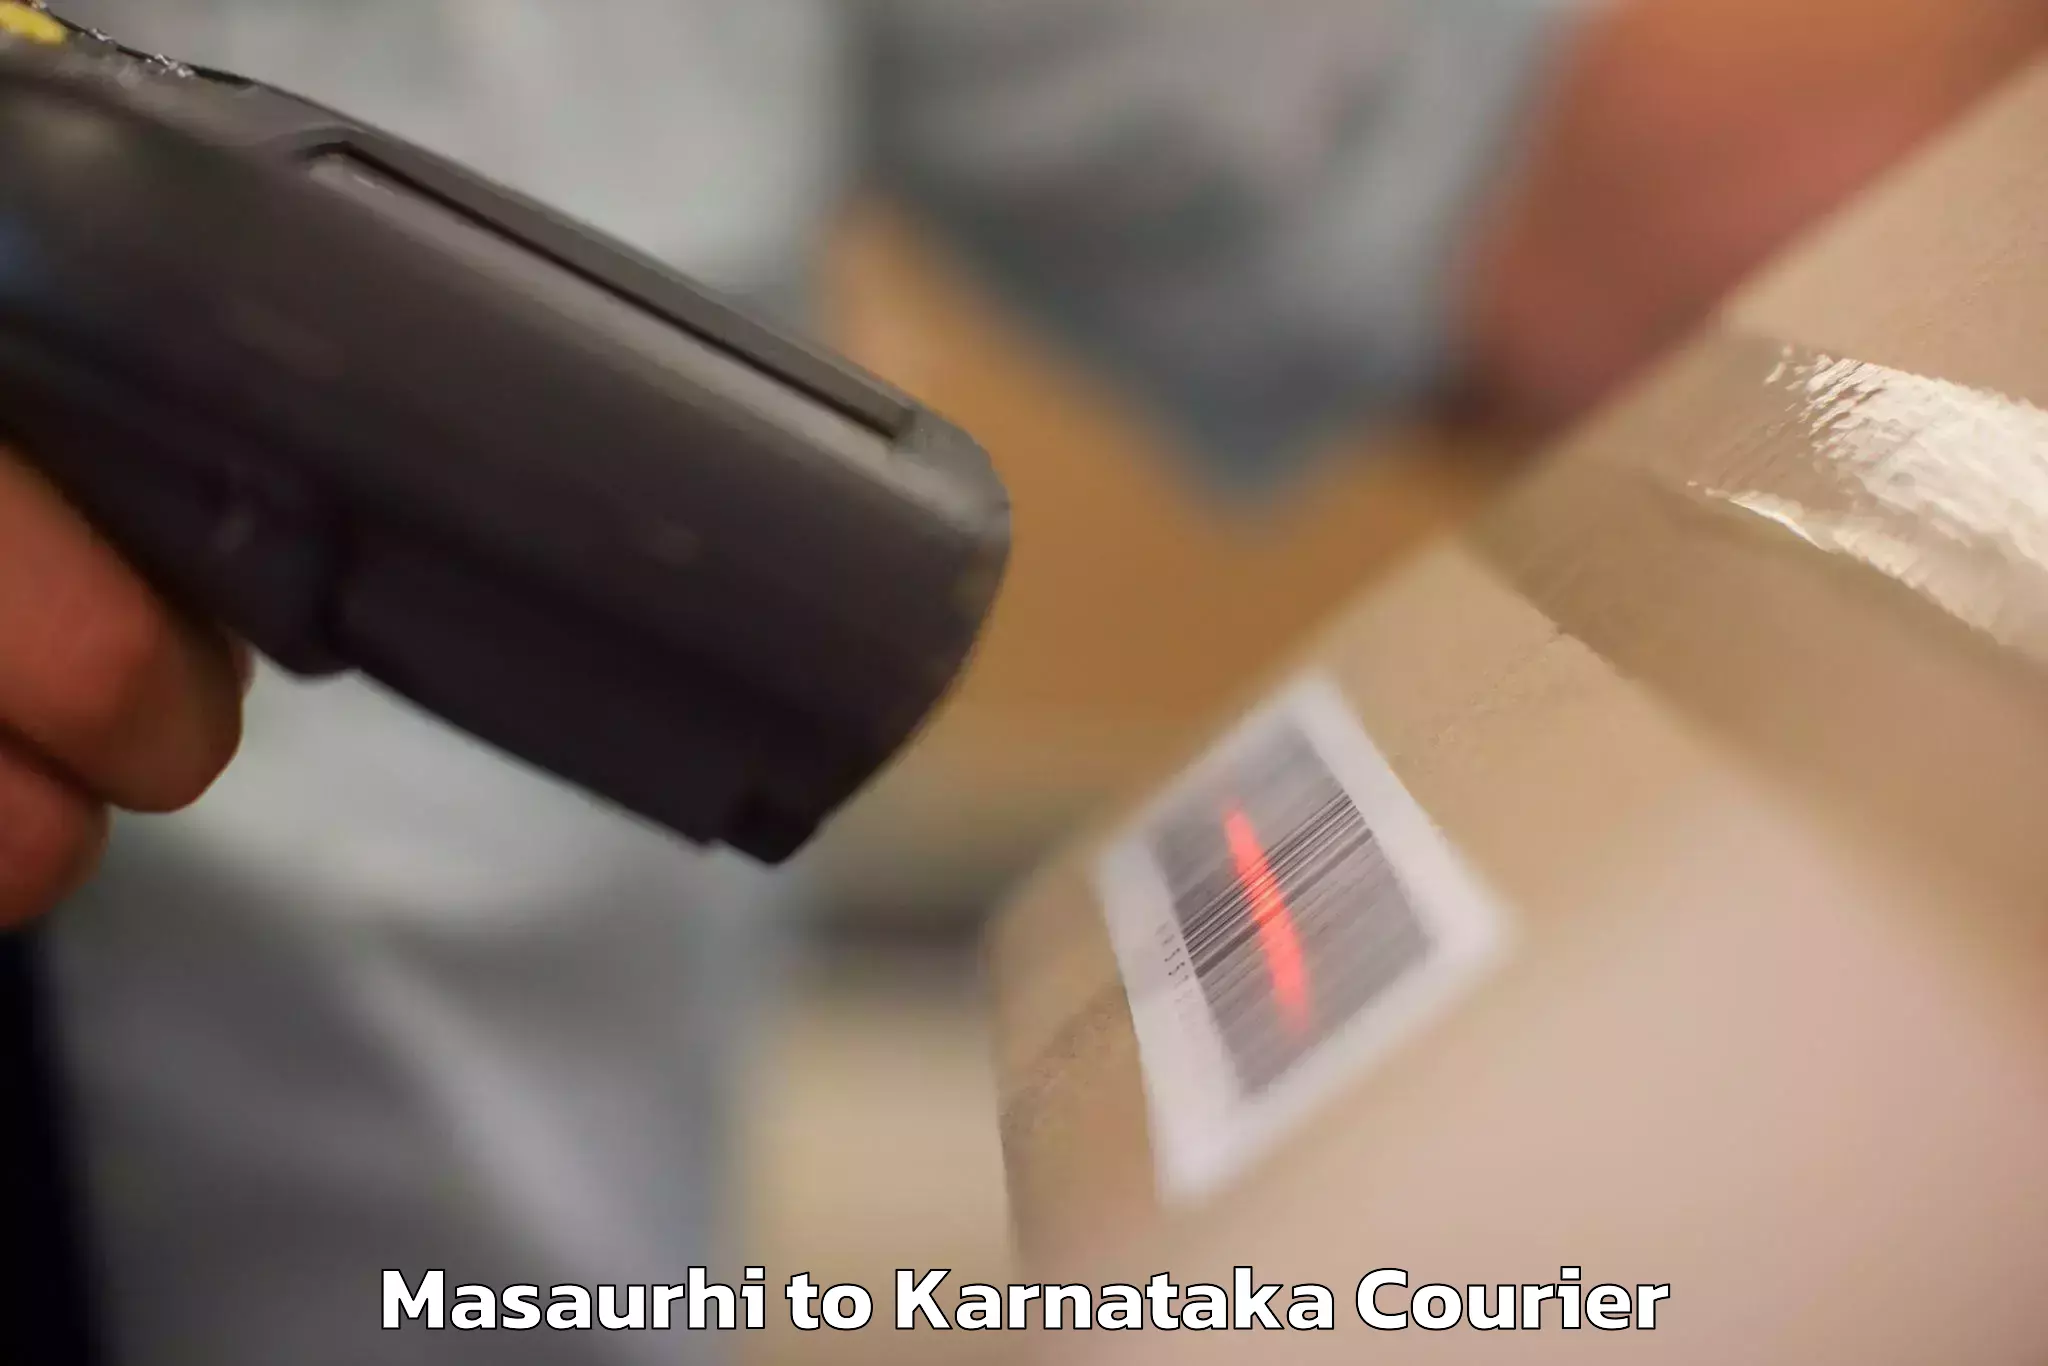 Door-to-door baggage service Masaurhi to Karnataka